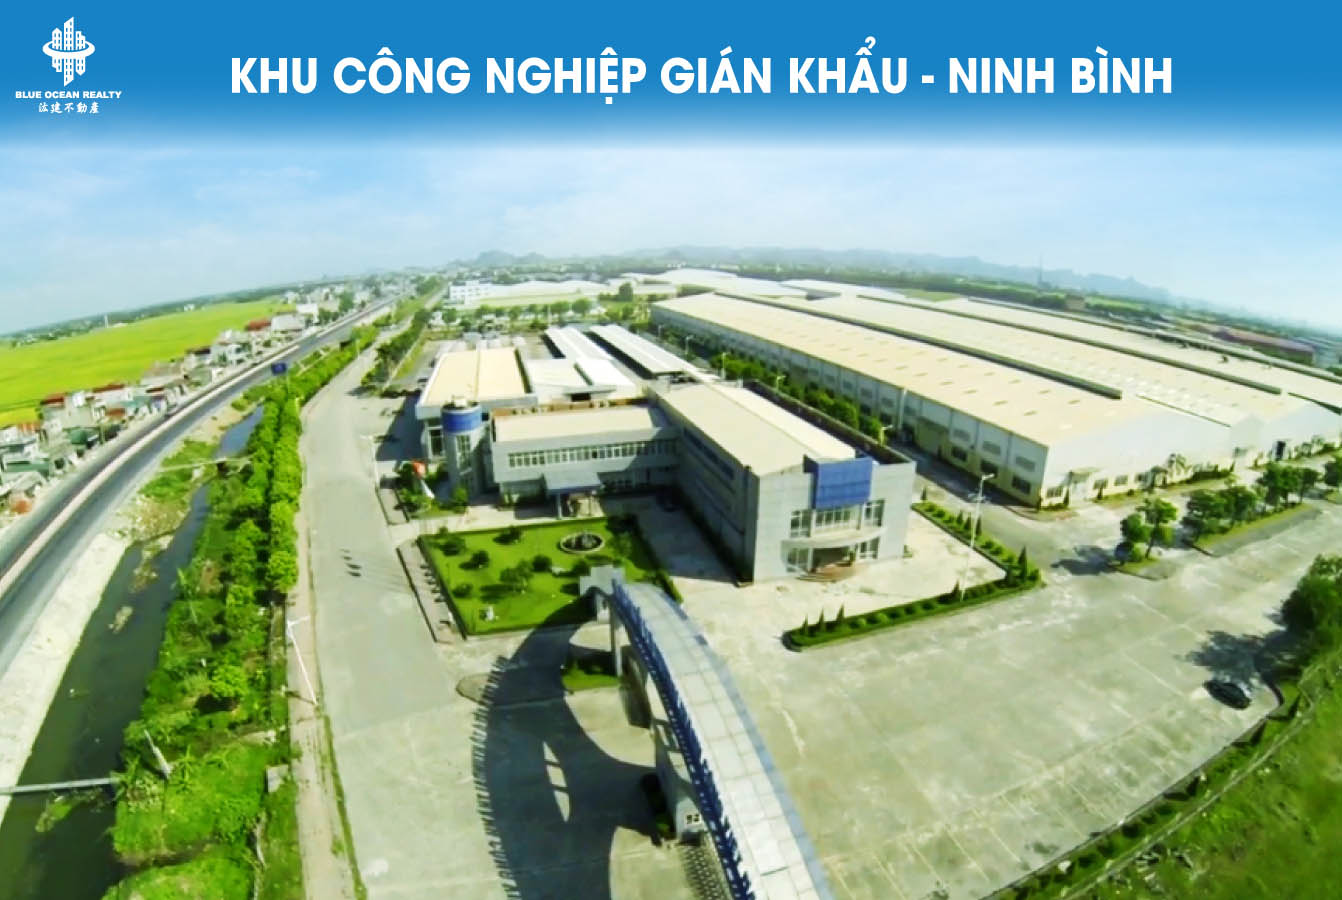 Khu công nghiệp (KCN) Gián Khẩu- Ninh Bình